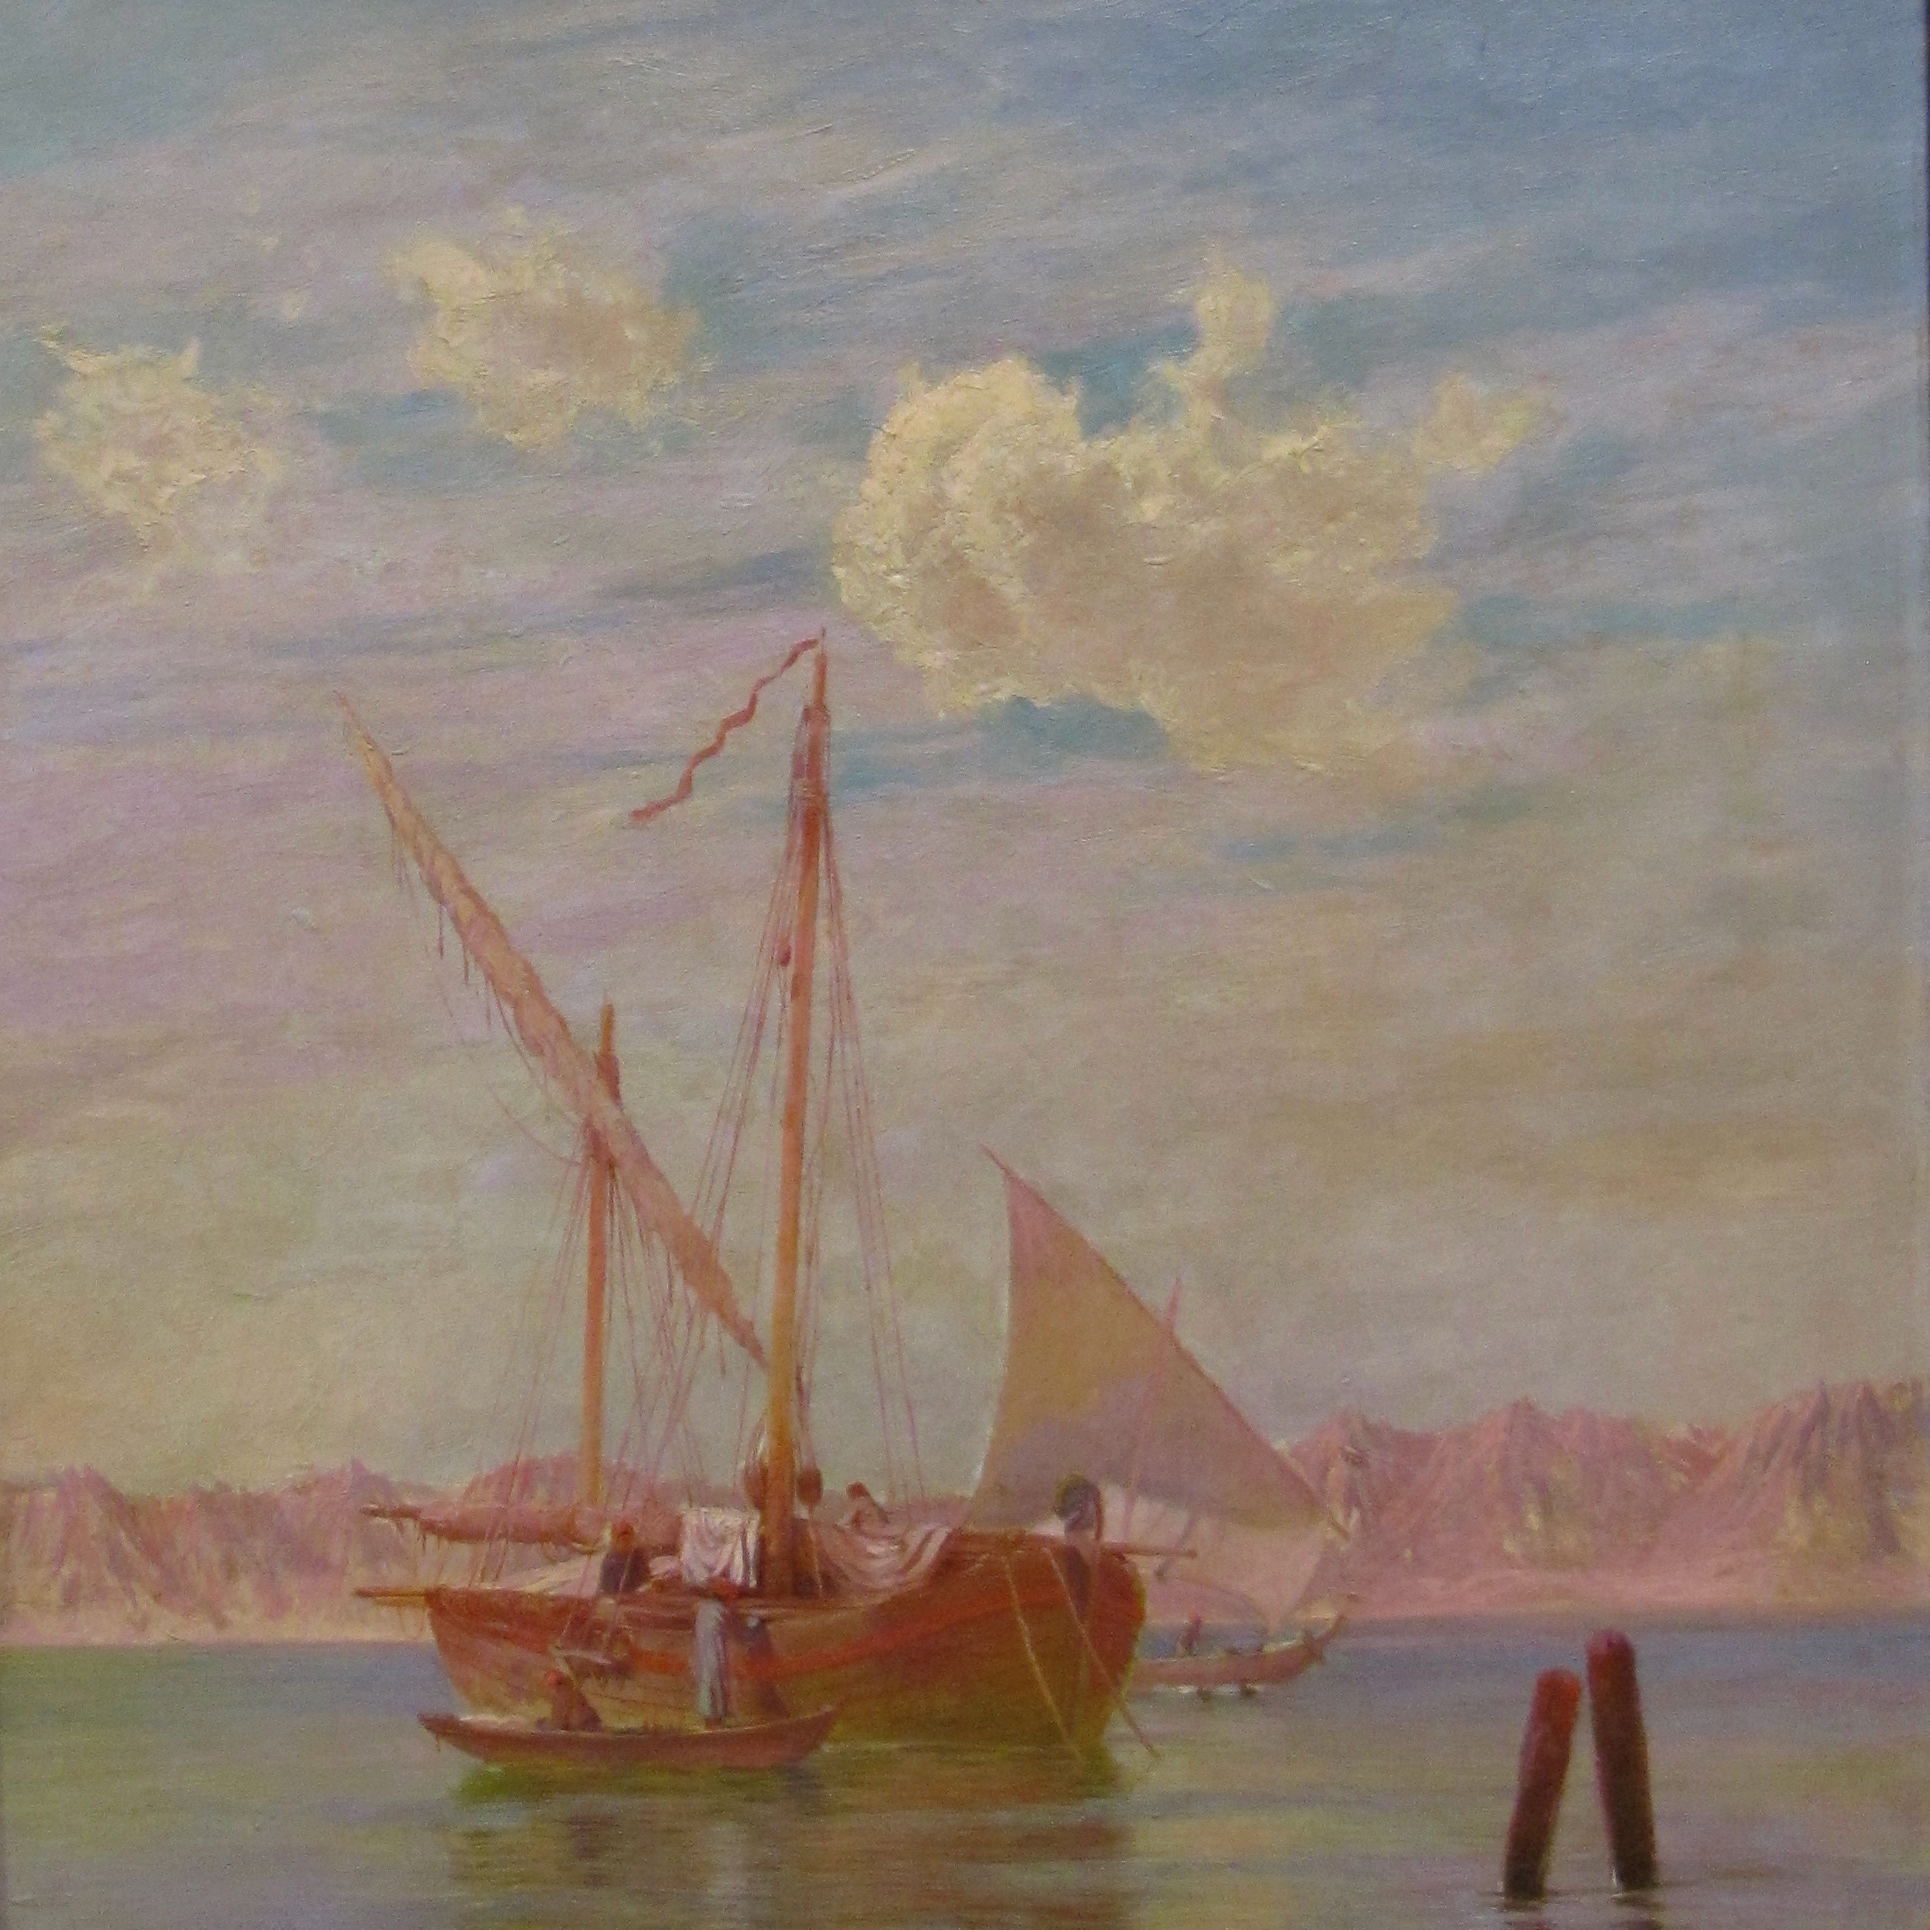 Leighton's Suez